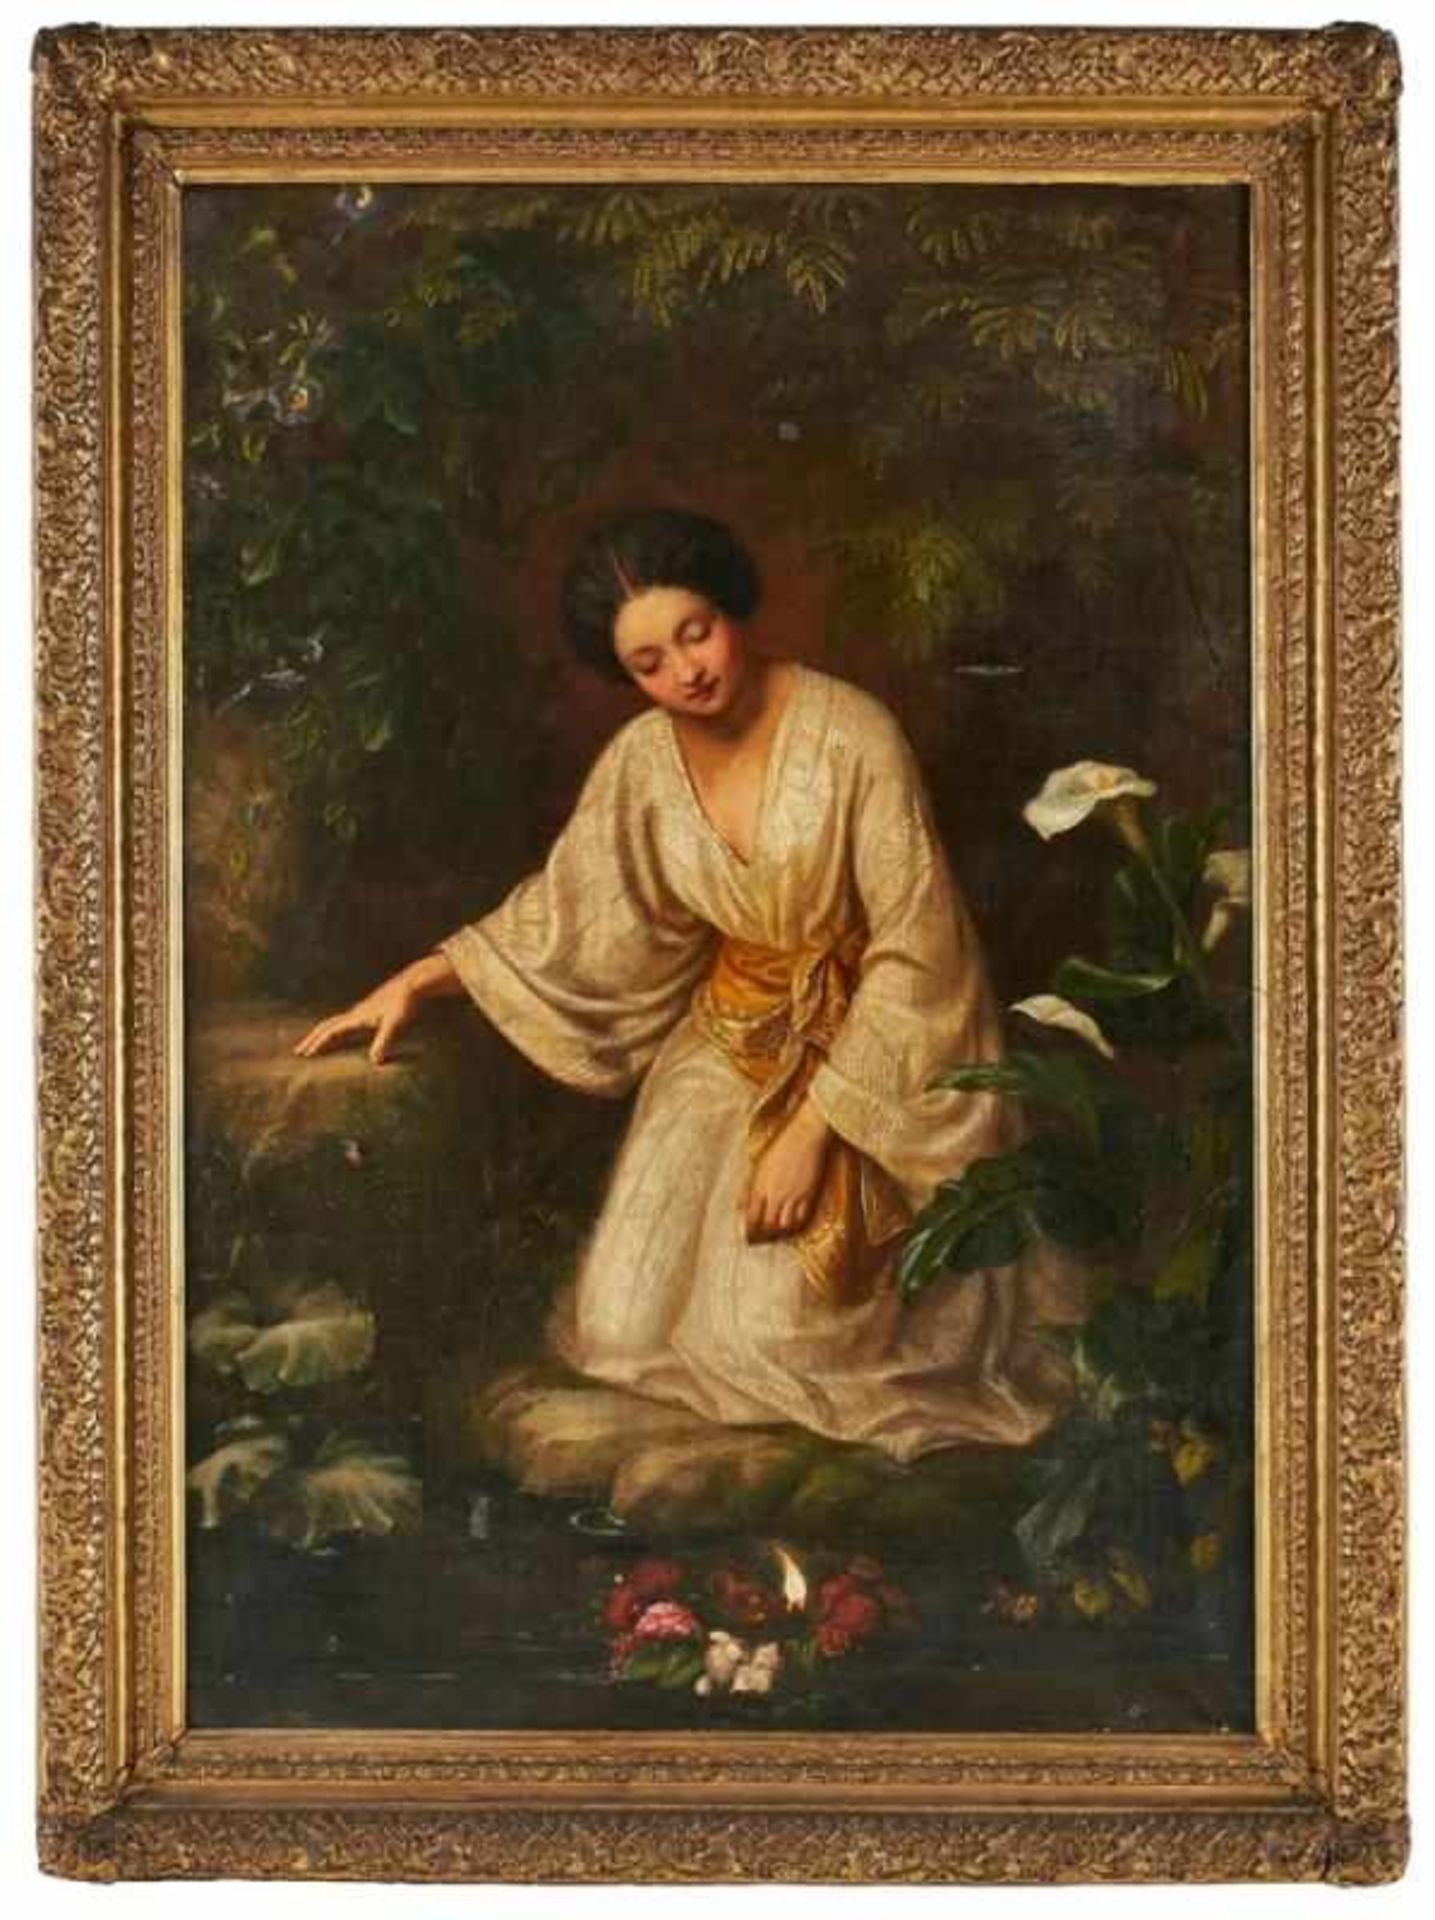 Gemälde Figurenmaler um 1870"Junge Frau in sinnlicher Versenkung" Öl/Lwd. (def.), 167 x 117 cm